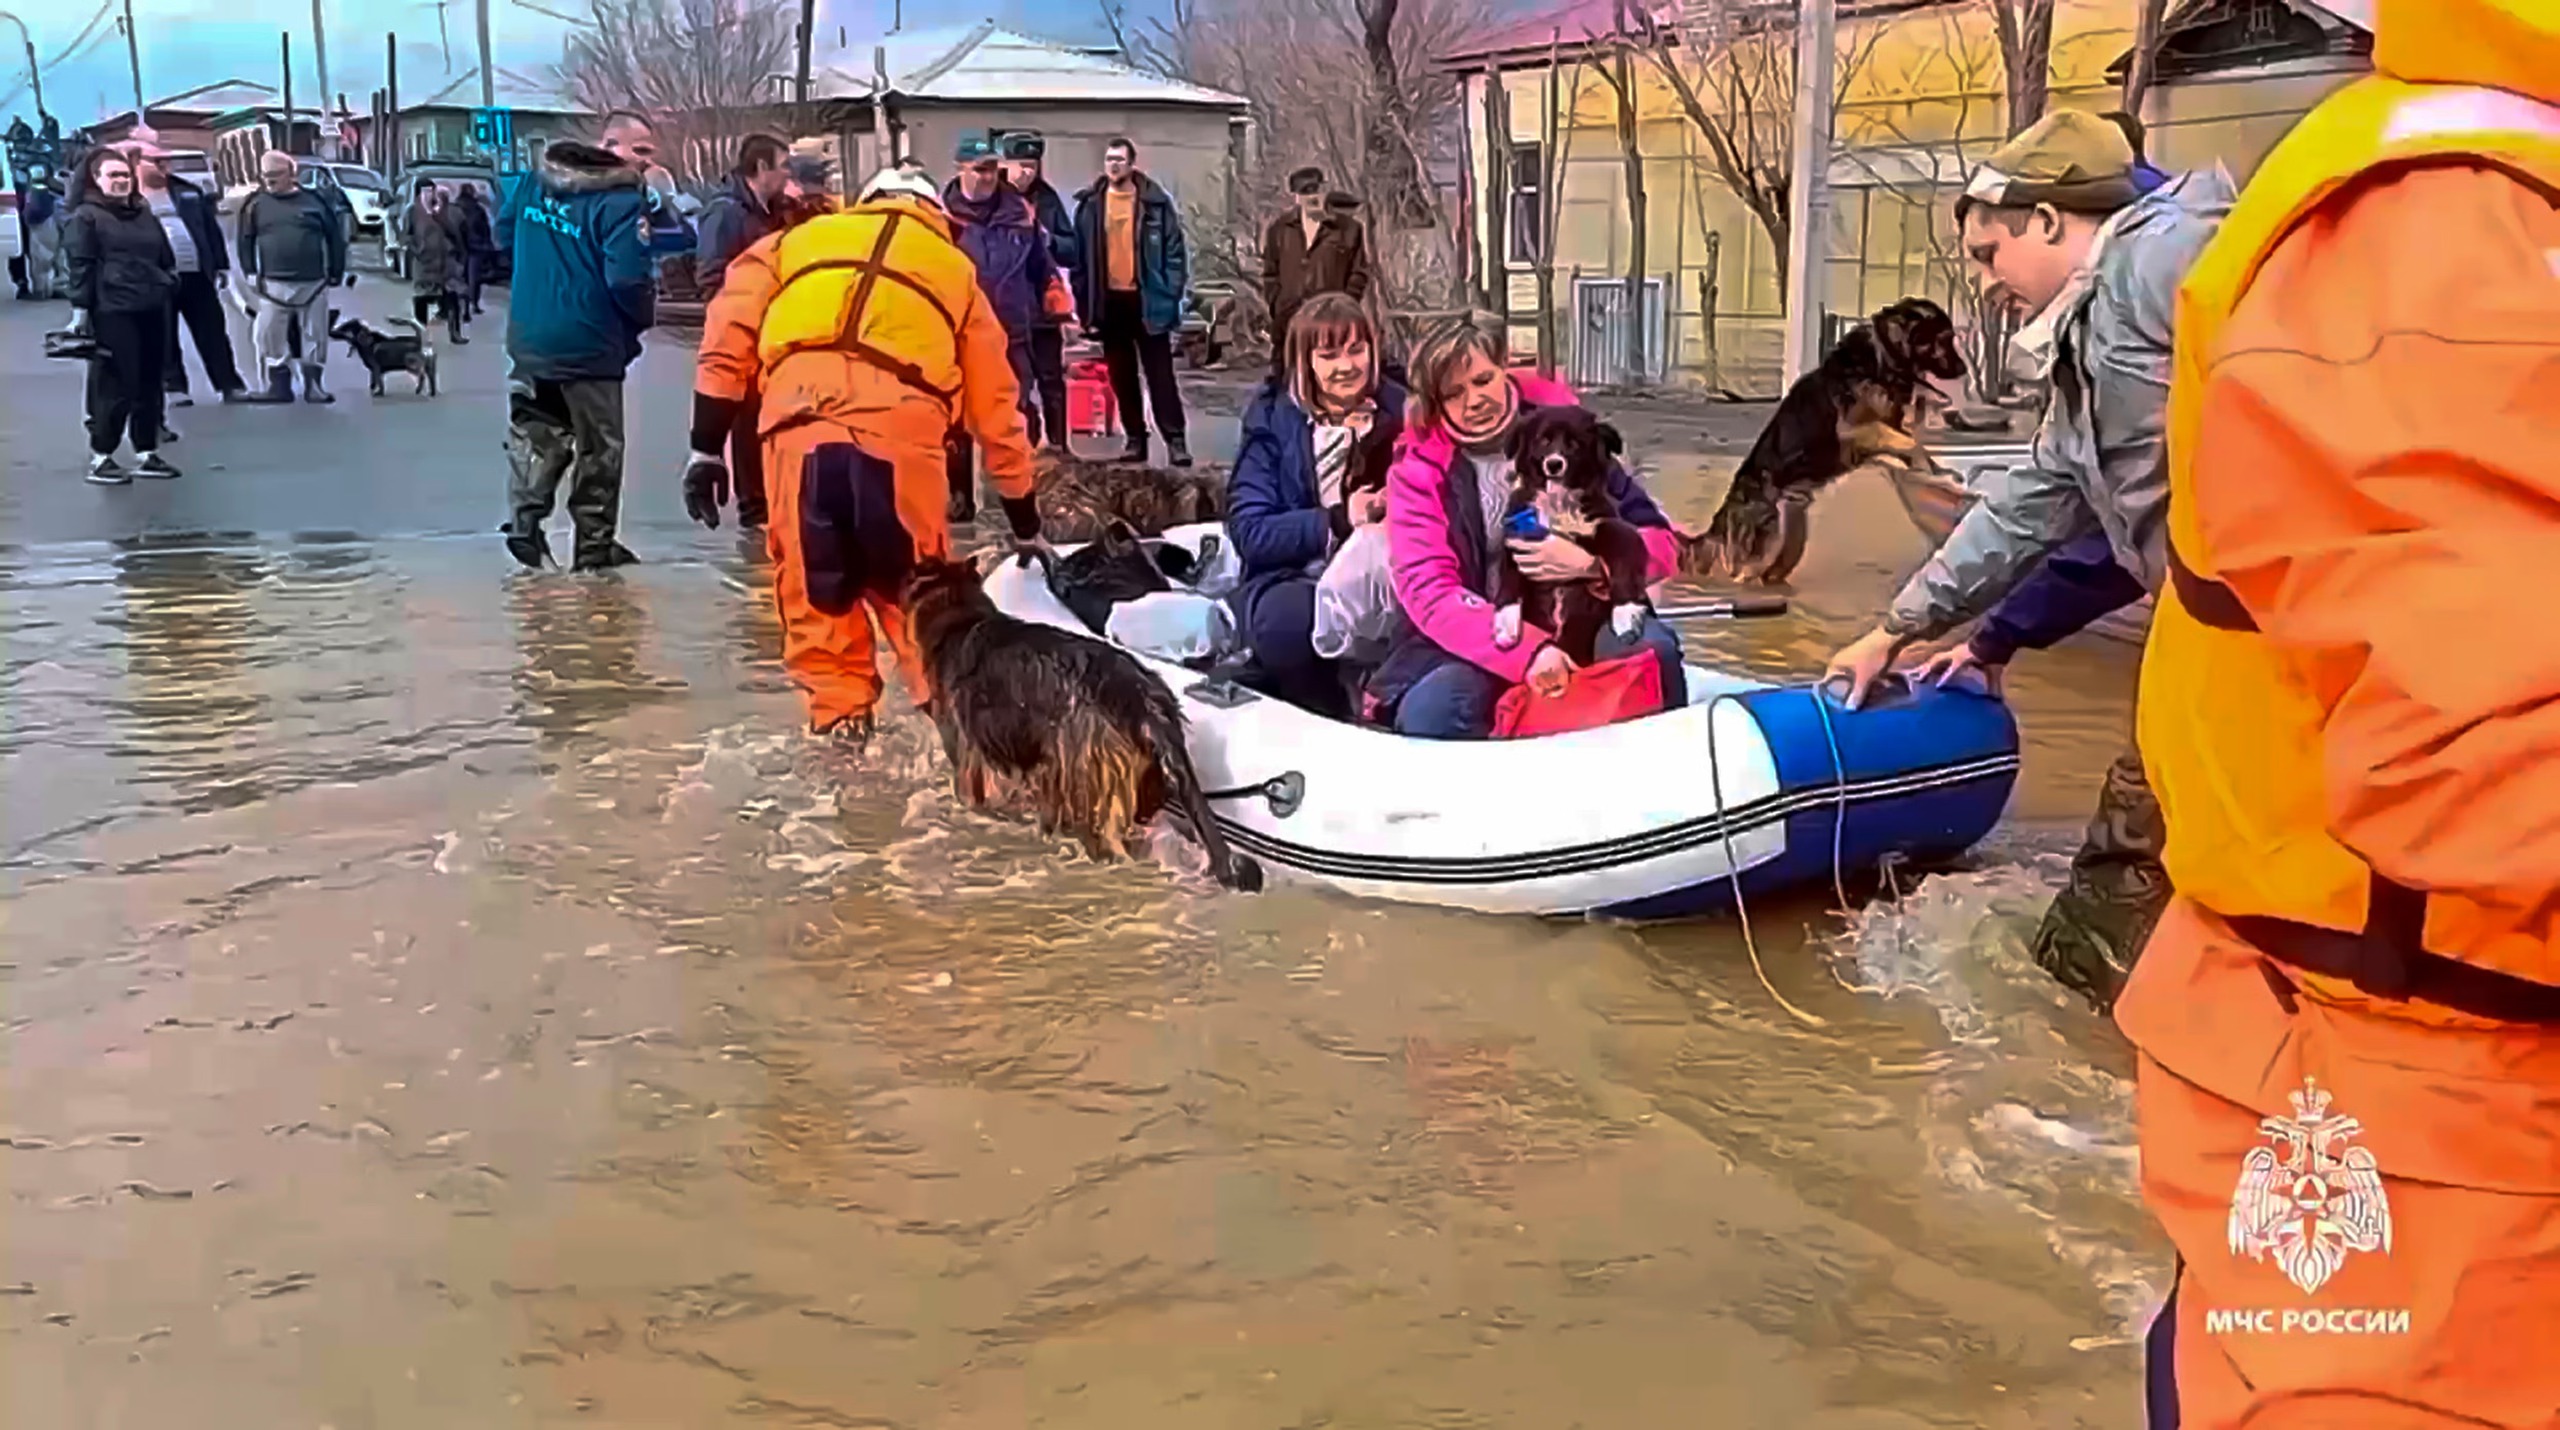 Người dân vùng lũ lụt tại Orenburg được sơ tán liên tục, bất kể đêm ngày. Đến nay, hơn 6.100 người đã được sơ tán khỏi thành phố, 11 nơi trú ẩn tạm thời đã được thiết lập, cung cấp 8.087 chỗ ở cho người dân. (Ảnh: Thông tấn xã Nga)